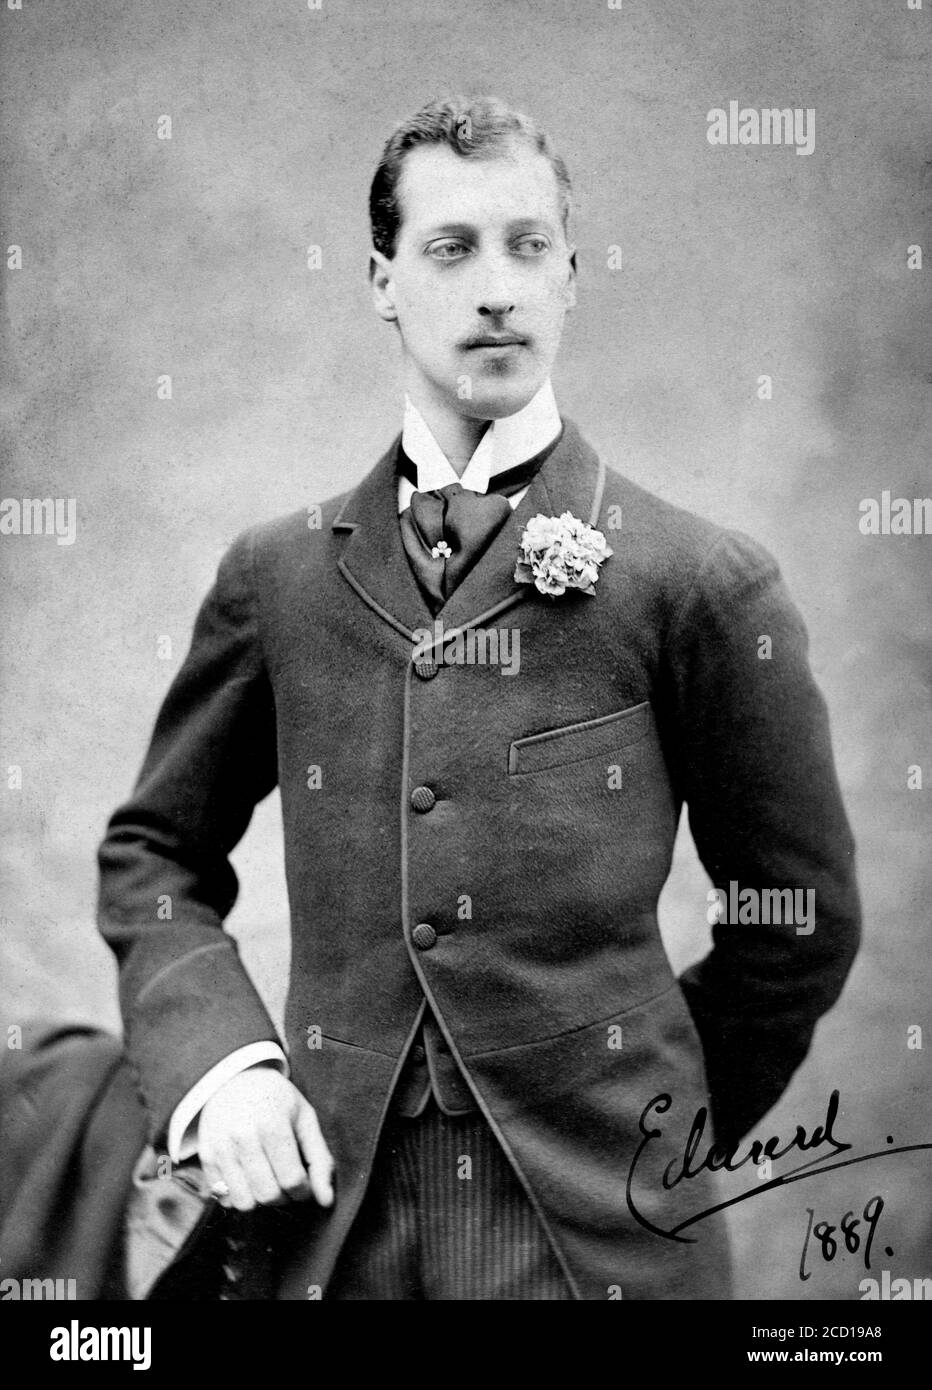 Príncipe Alberto Víctor, duque de Clarence y Avondale (1864-1892), retrato de J Thompson, 1889. El duque fue una vez reputado como Jack el Destripador, pero esta teoría ha sido en gran medida descartada. Foto de stock